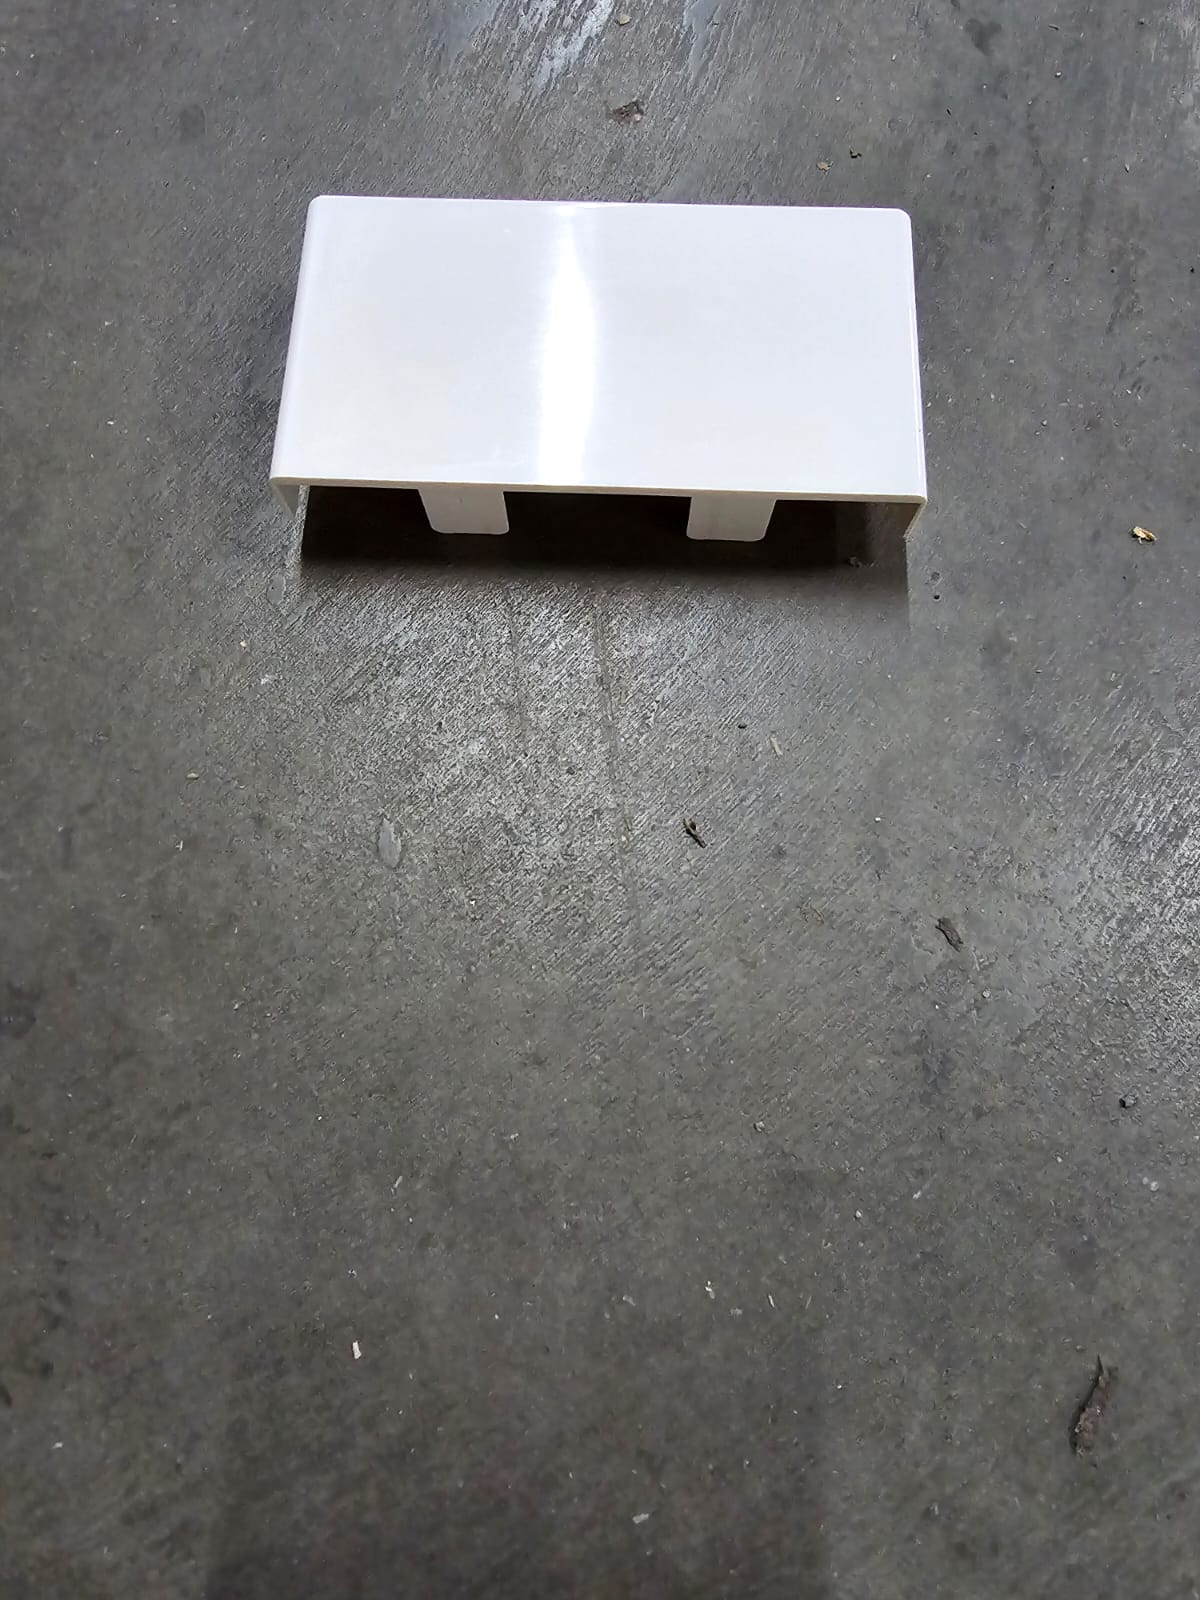 Enddeckel für Brüstungskanal Kunststoff 110 x 60 mm reinweiß, RAL 9001